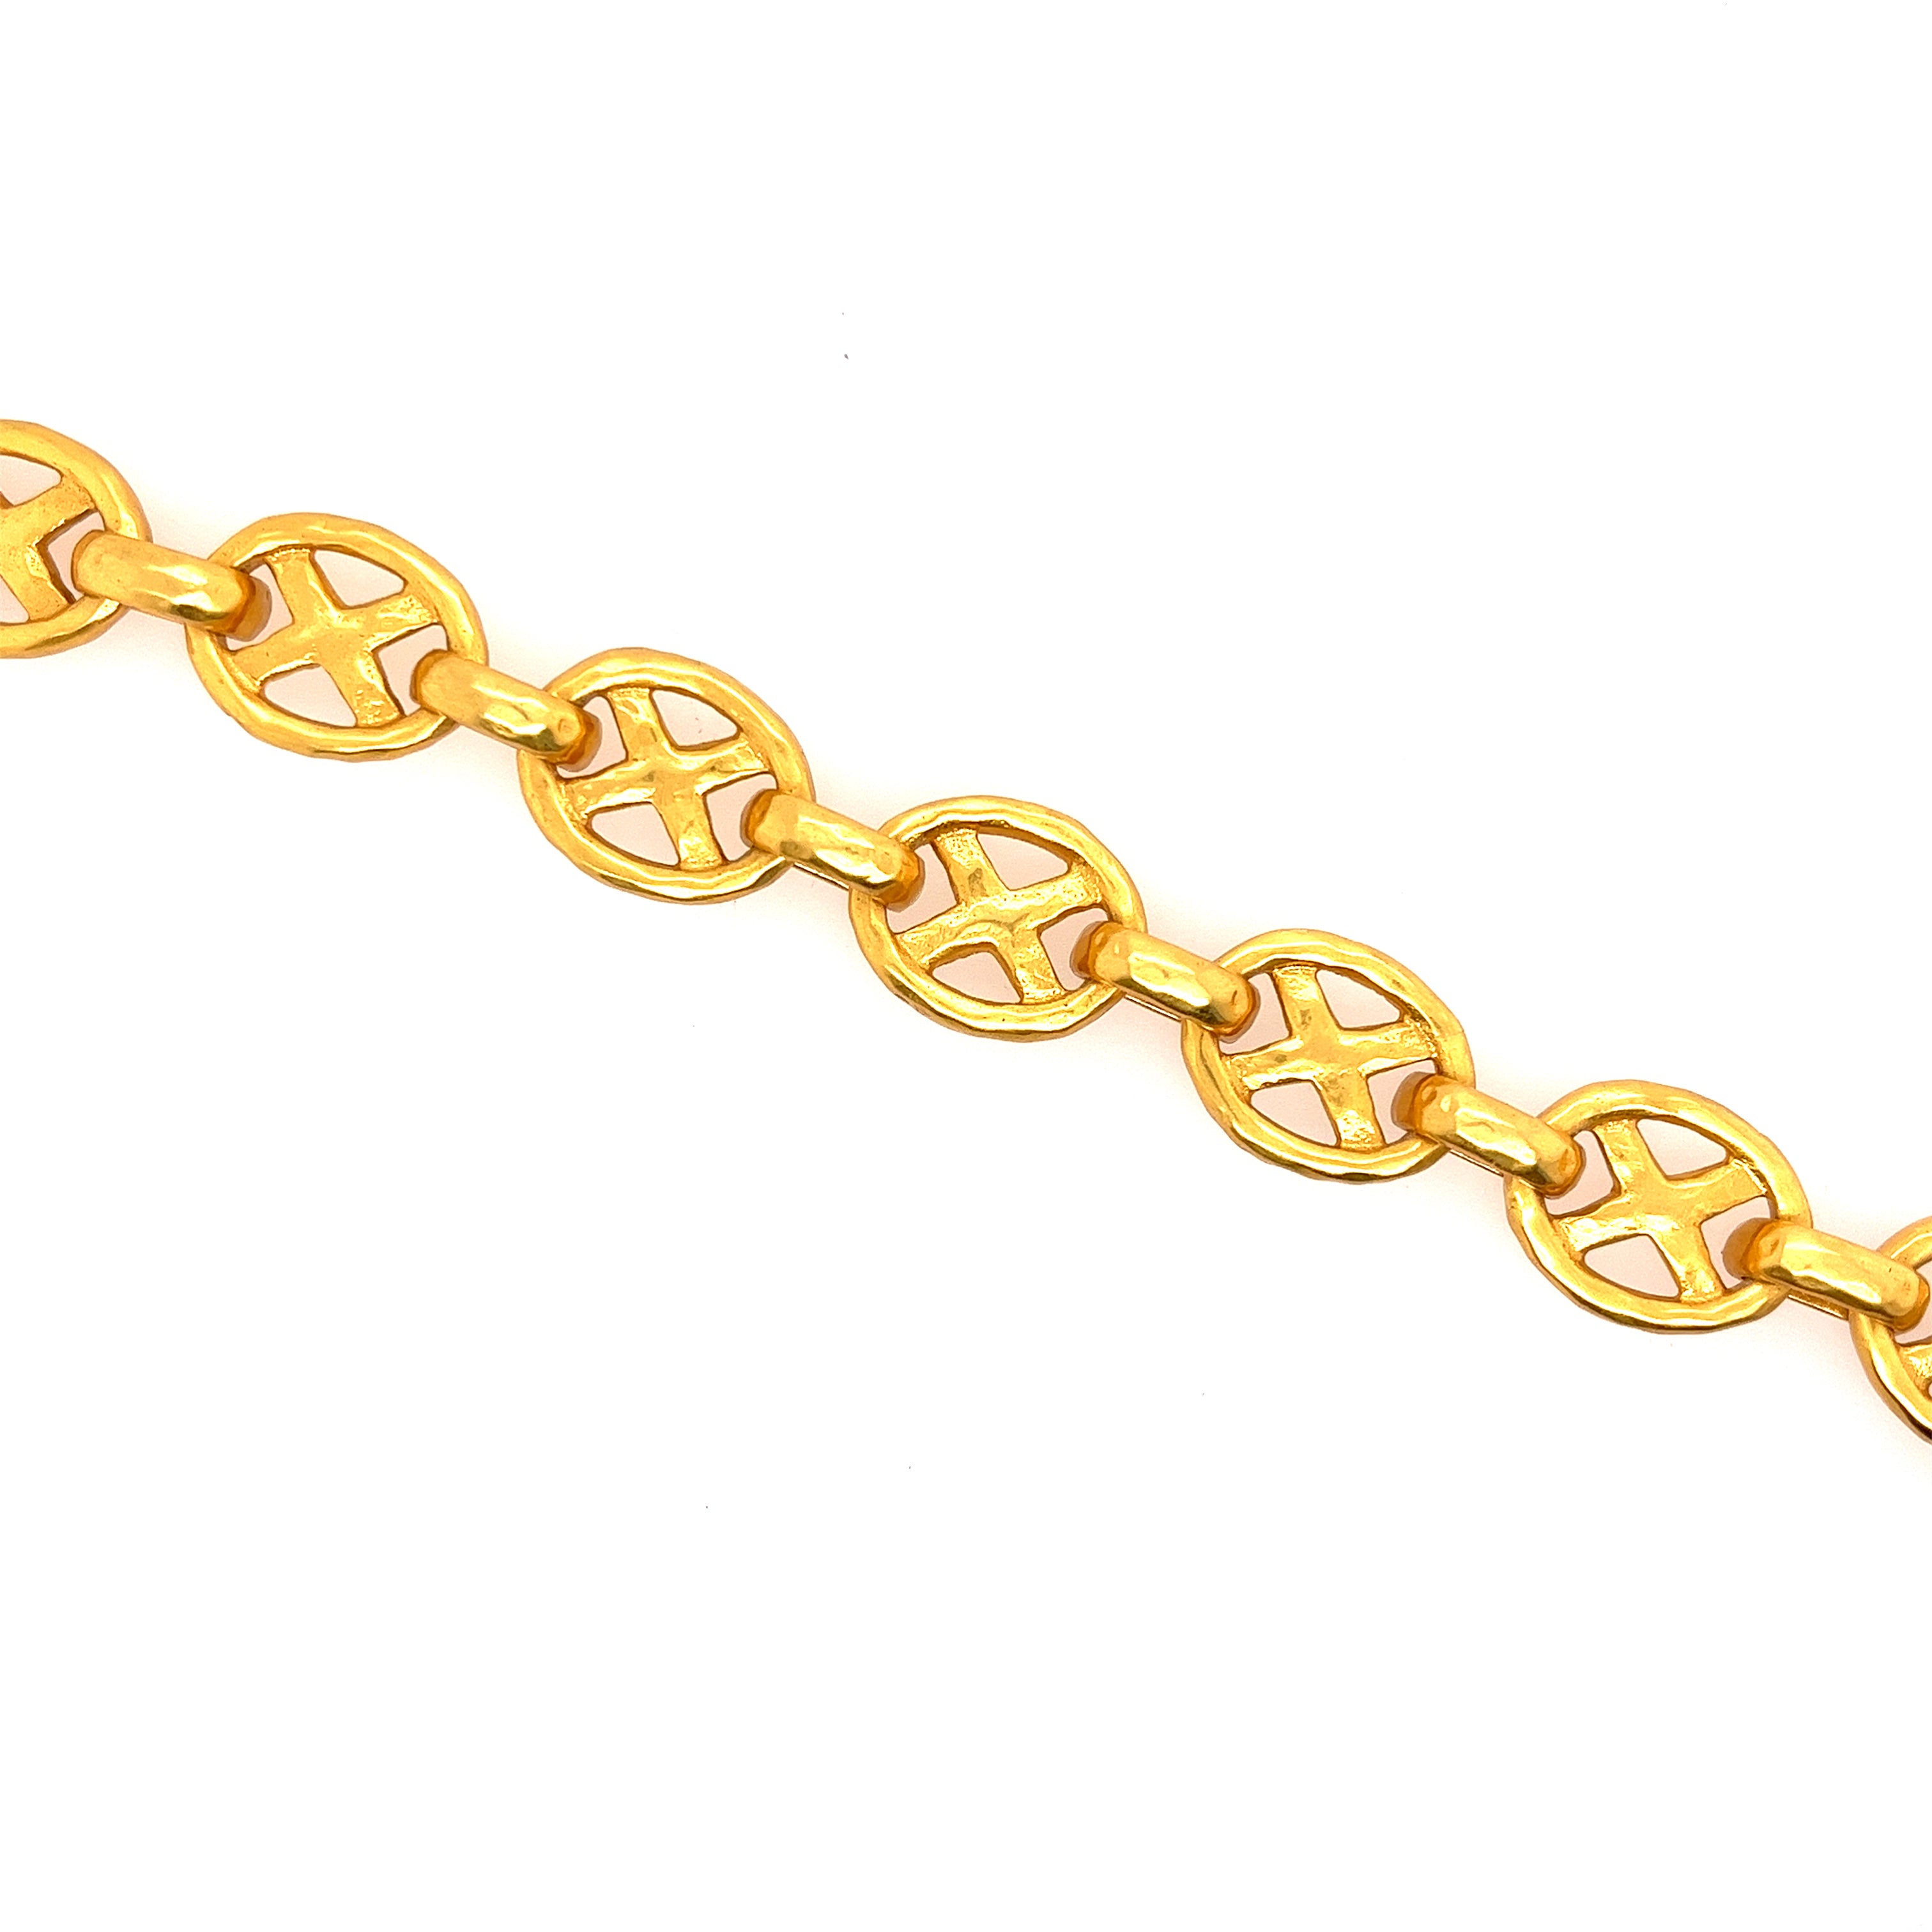 Gold Plated Link Bracelet